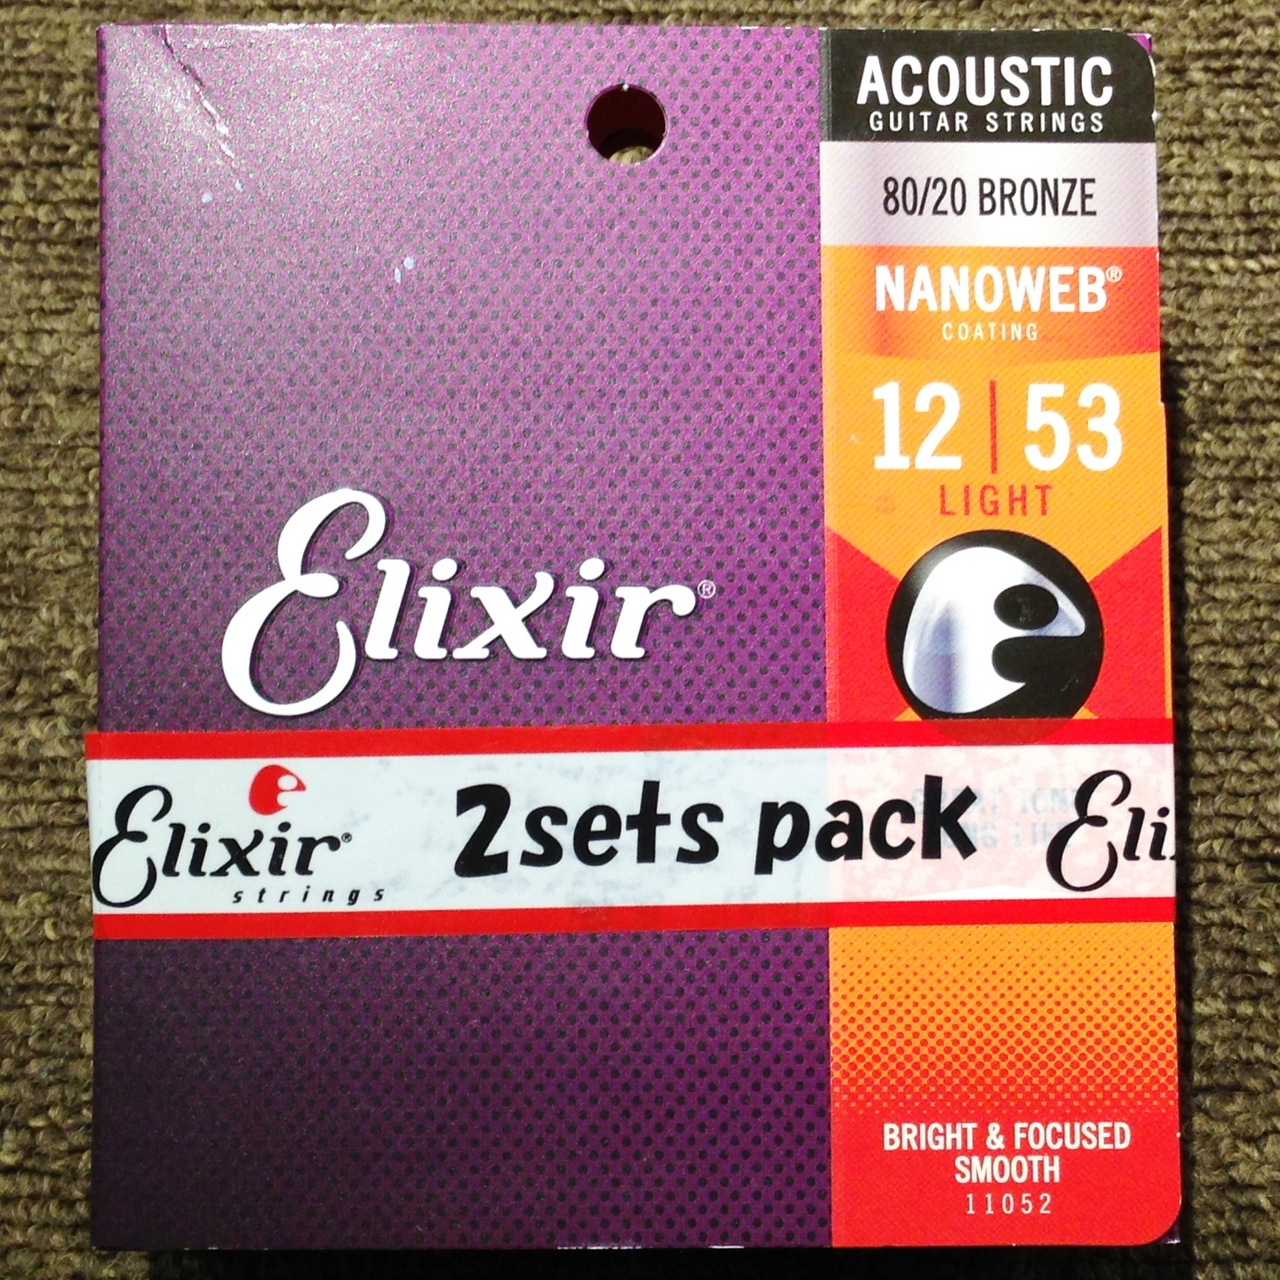 Elixir エリクサー アコースティック弦 1253 弦 12個セット